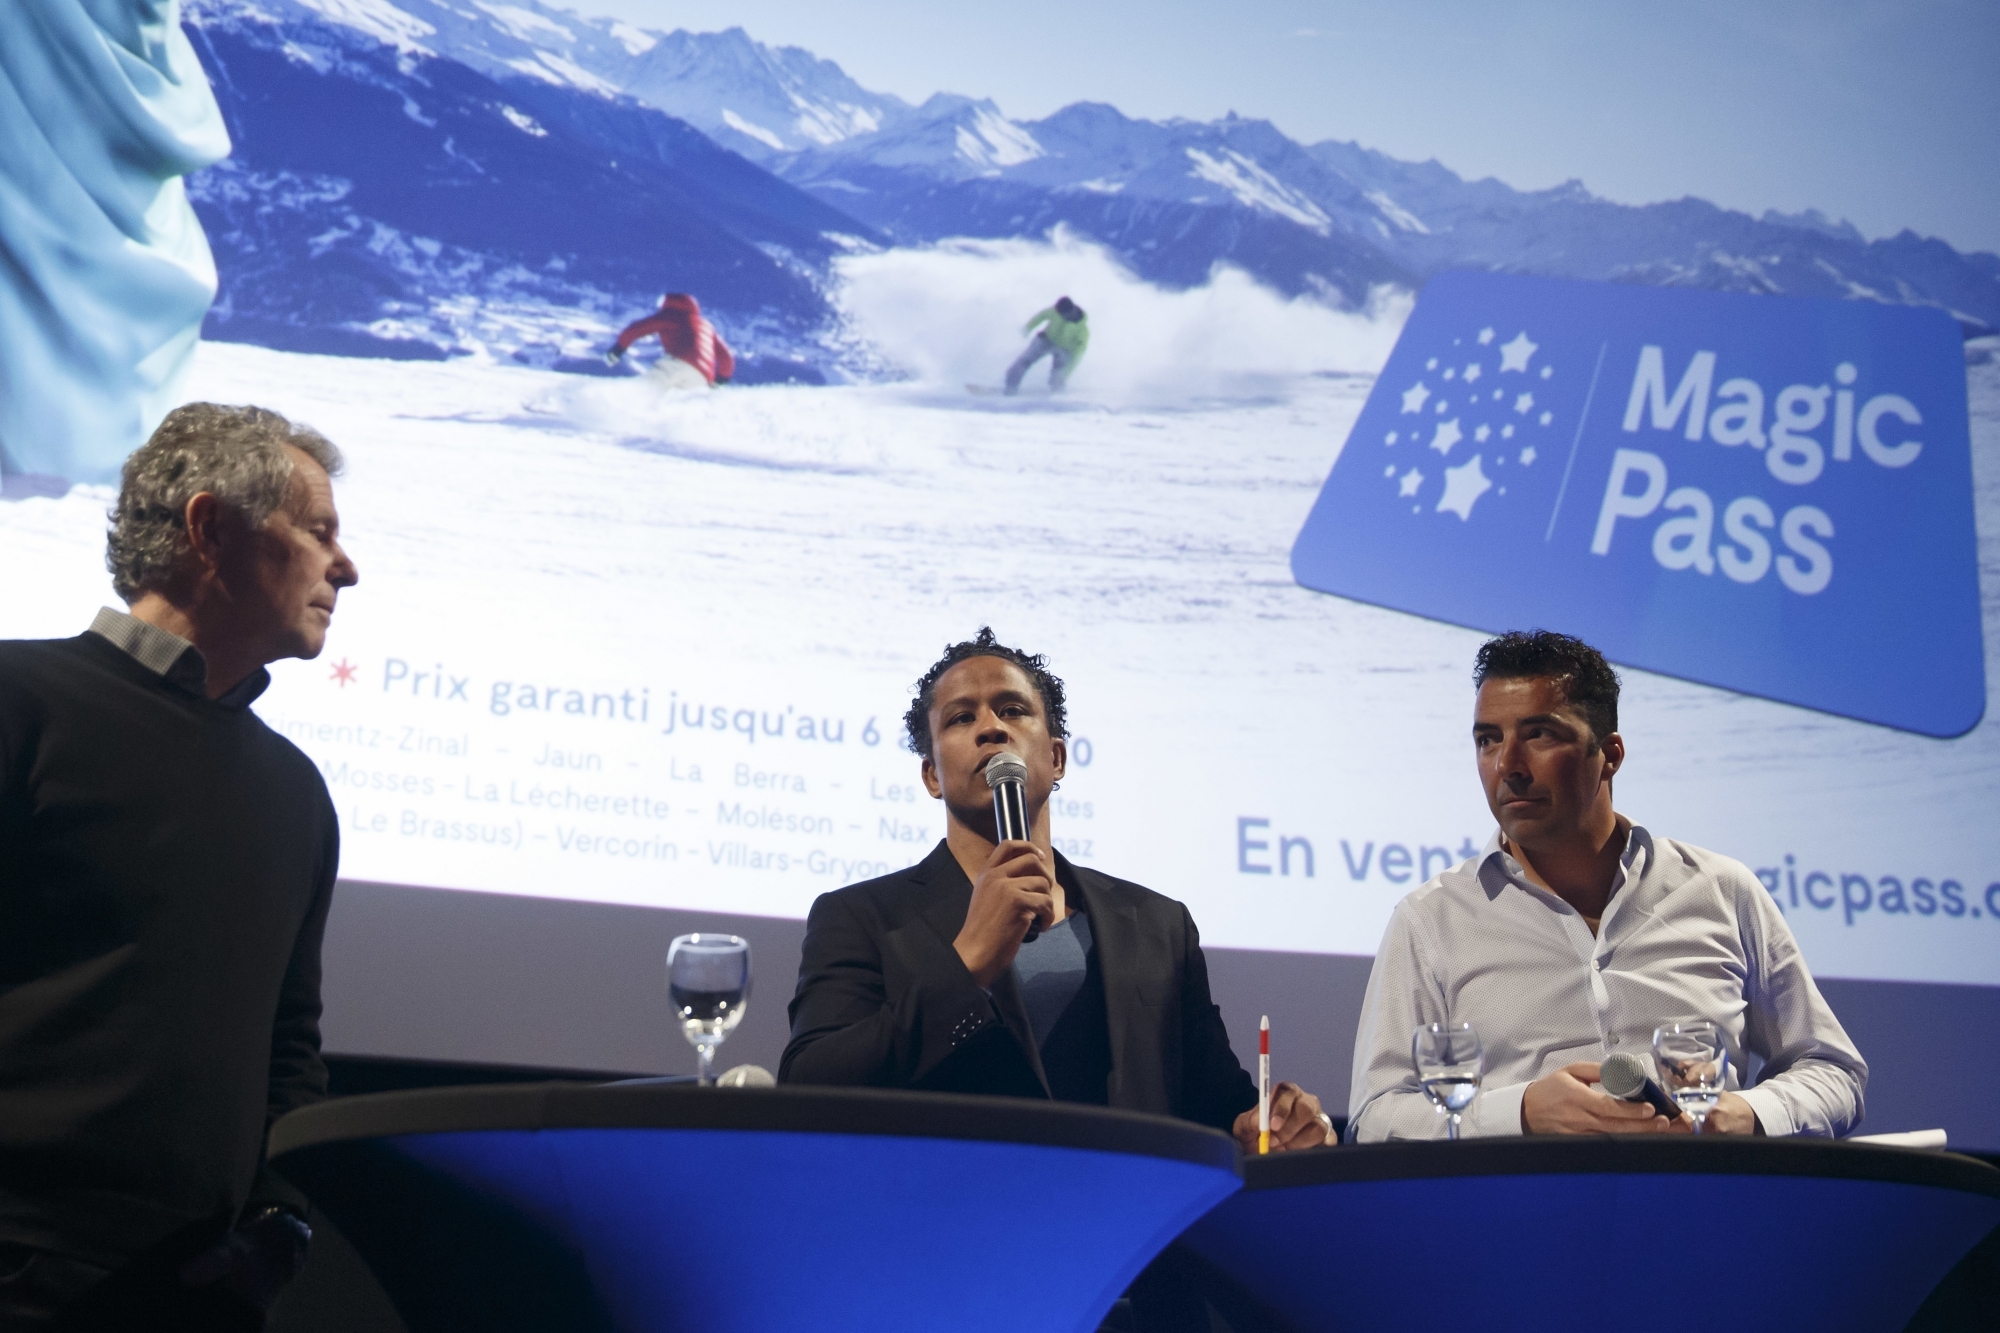 Pierre Besson, Sergei Aschwanden et Sébastien Travelletti. Les administrateurs du Magic Pass annonçaient 3 millions de journées skieurs pour les trente stations partenaires lors de la saison passée.